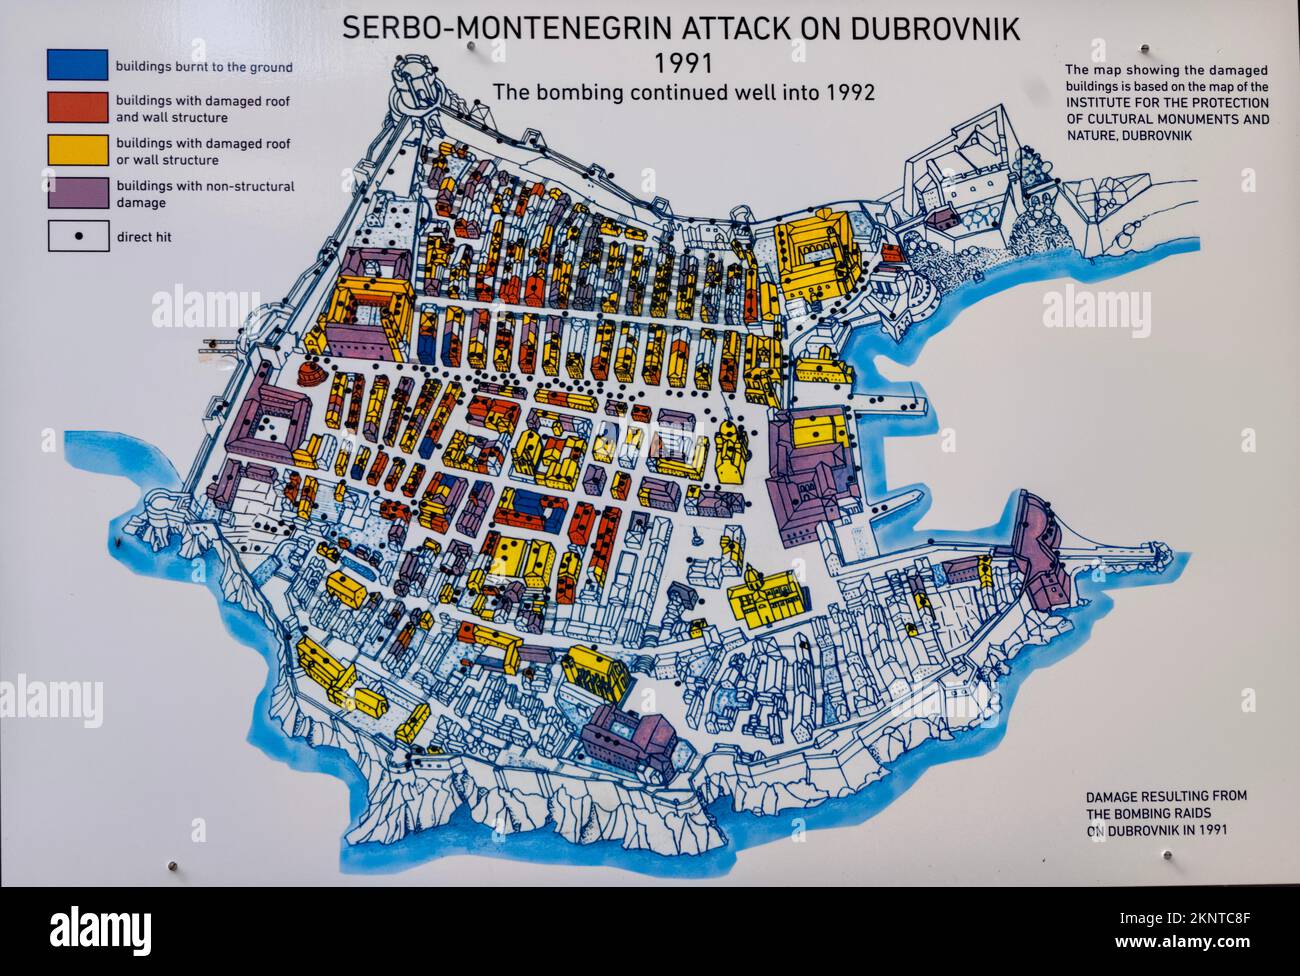 Dubrovnik, Croatie carte montrant les dommages causés par les raids de bombardement sur Dubrovnik en 1991 attaque de Serbo-Monténégro sur Dubrovnik 1991 Banque D'Images